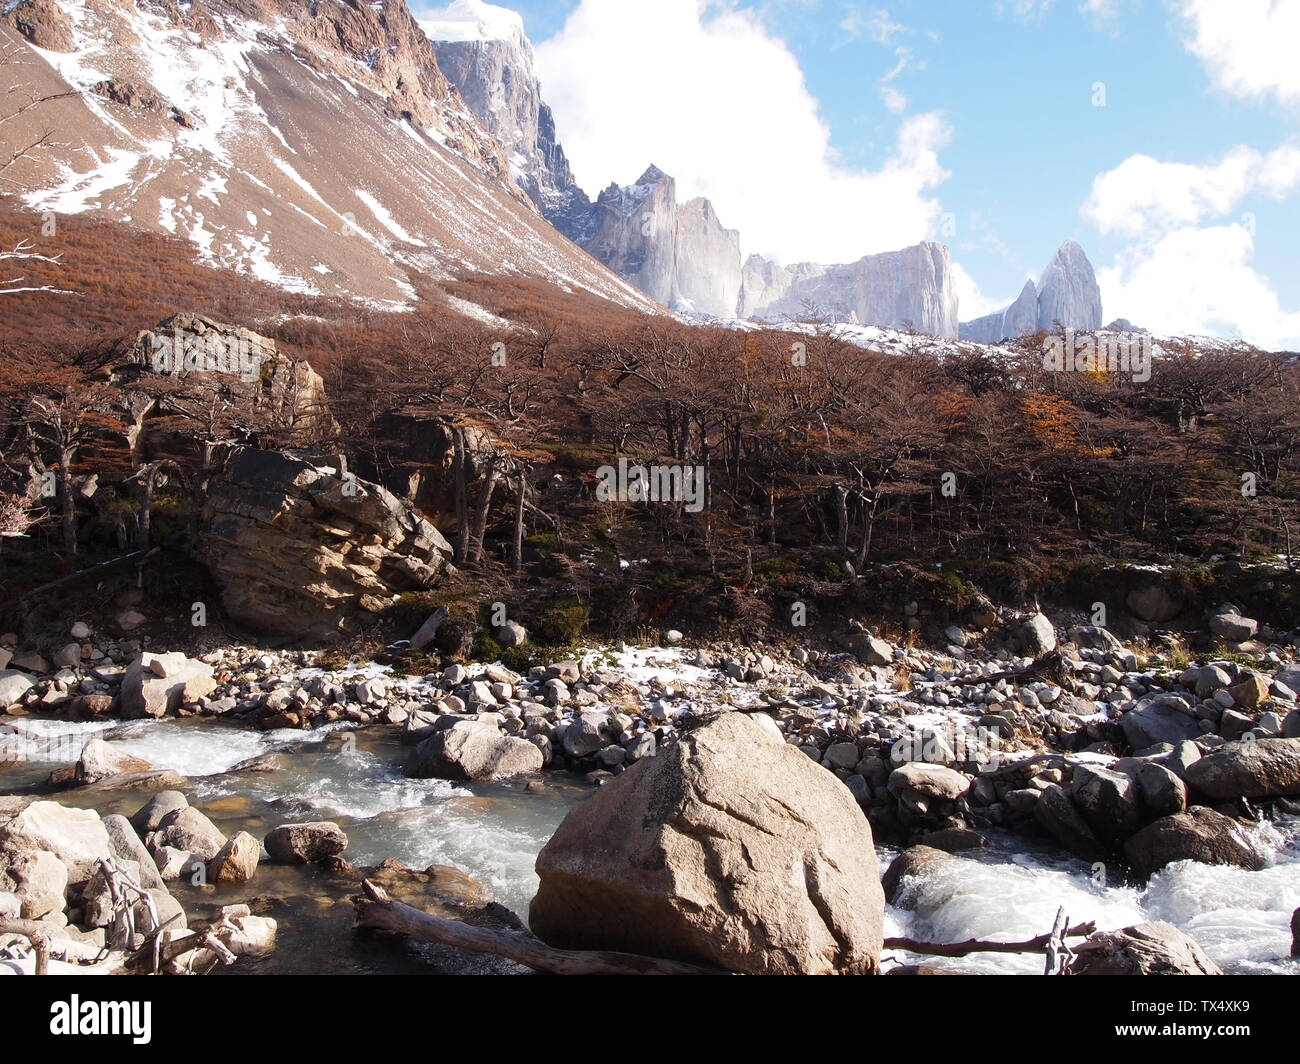 L'habitat de montagne vierge dans le Parc National Torres del Paine, Patagonie Chilienne Banque D'Images